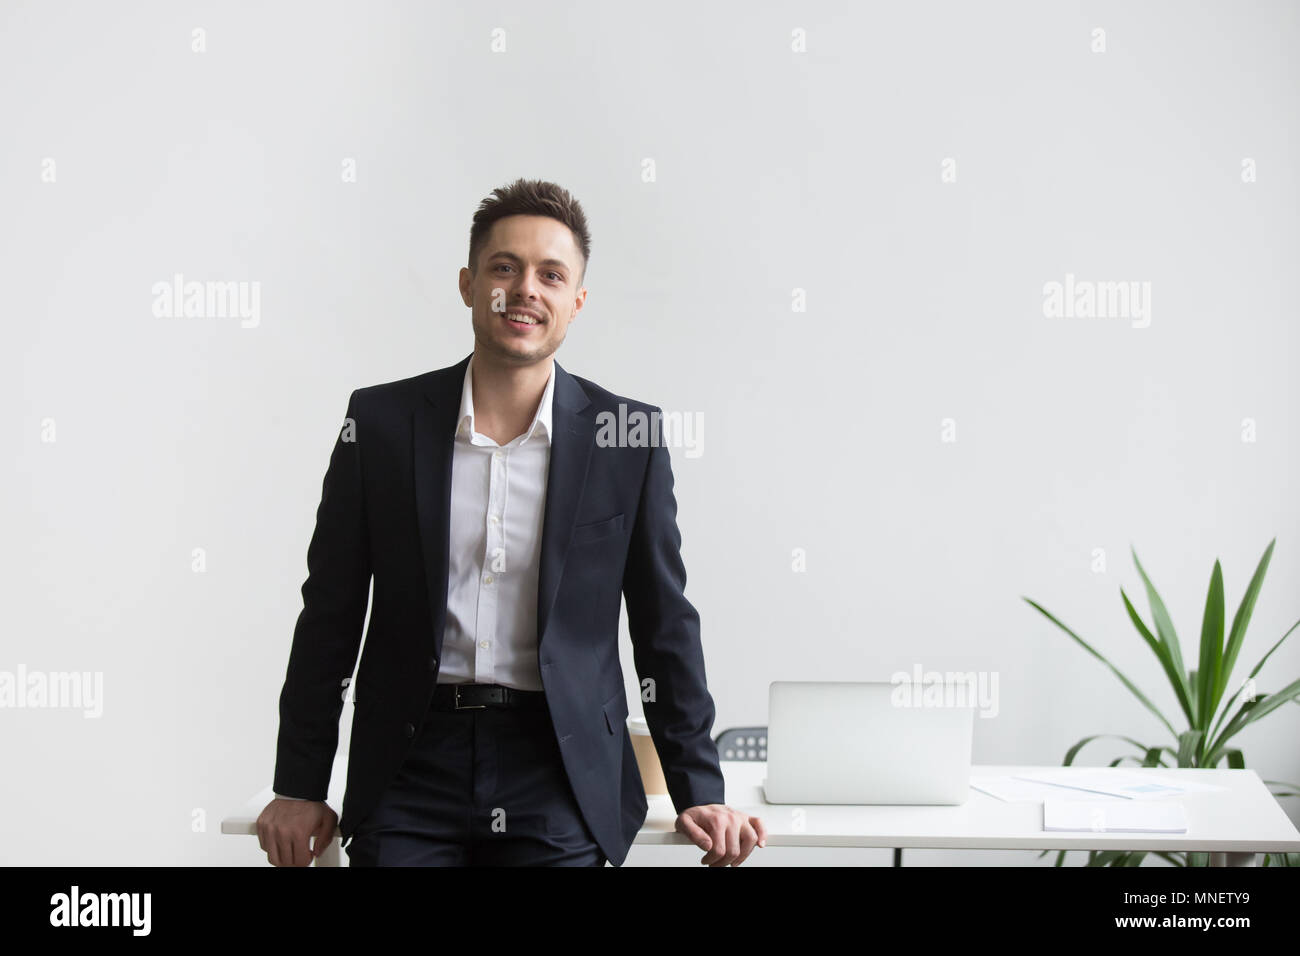 Lächelnd Company CEO in der Nähe von Büro Schreibtisch posing Stockfoto